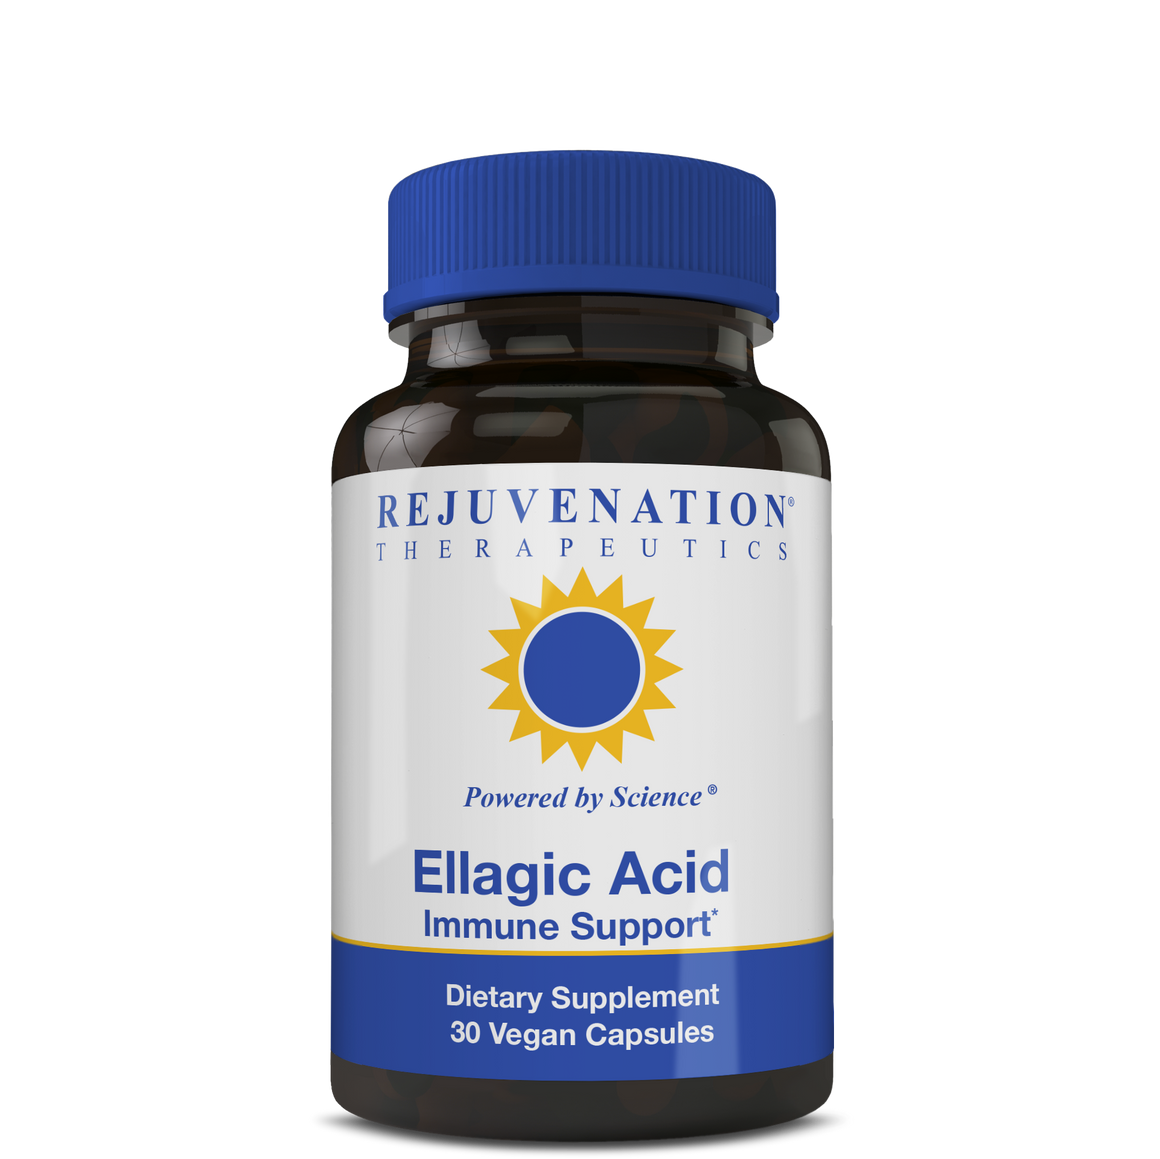 Ellagic Acid (250 mg, 30 Vegan Capsules) - Immune Support & Vascular Health, Non-GMO, Gluten-Free